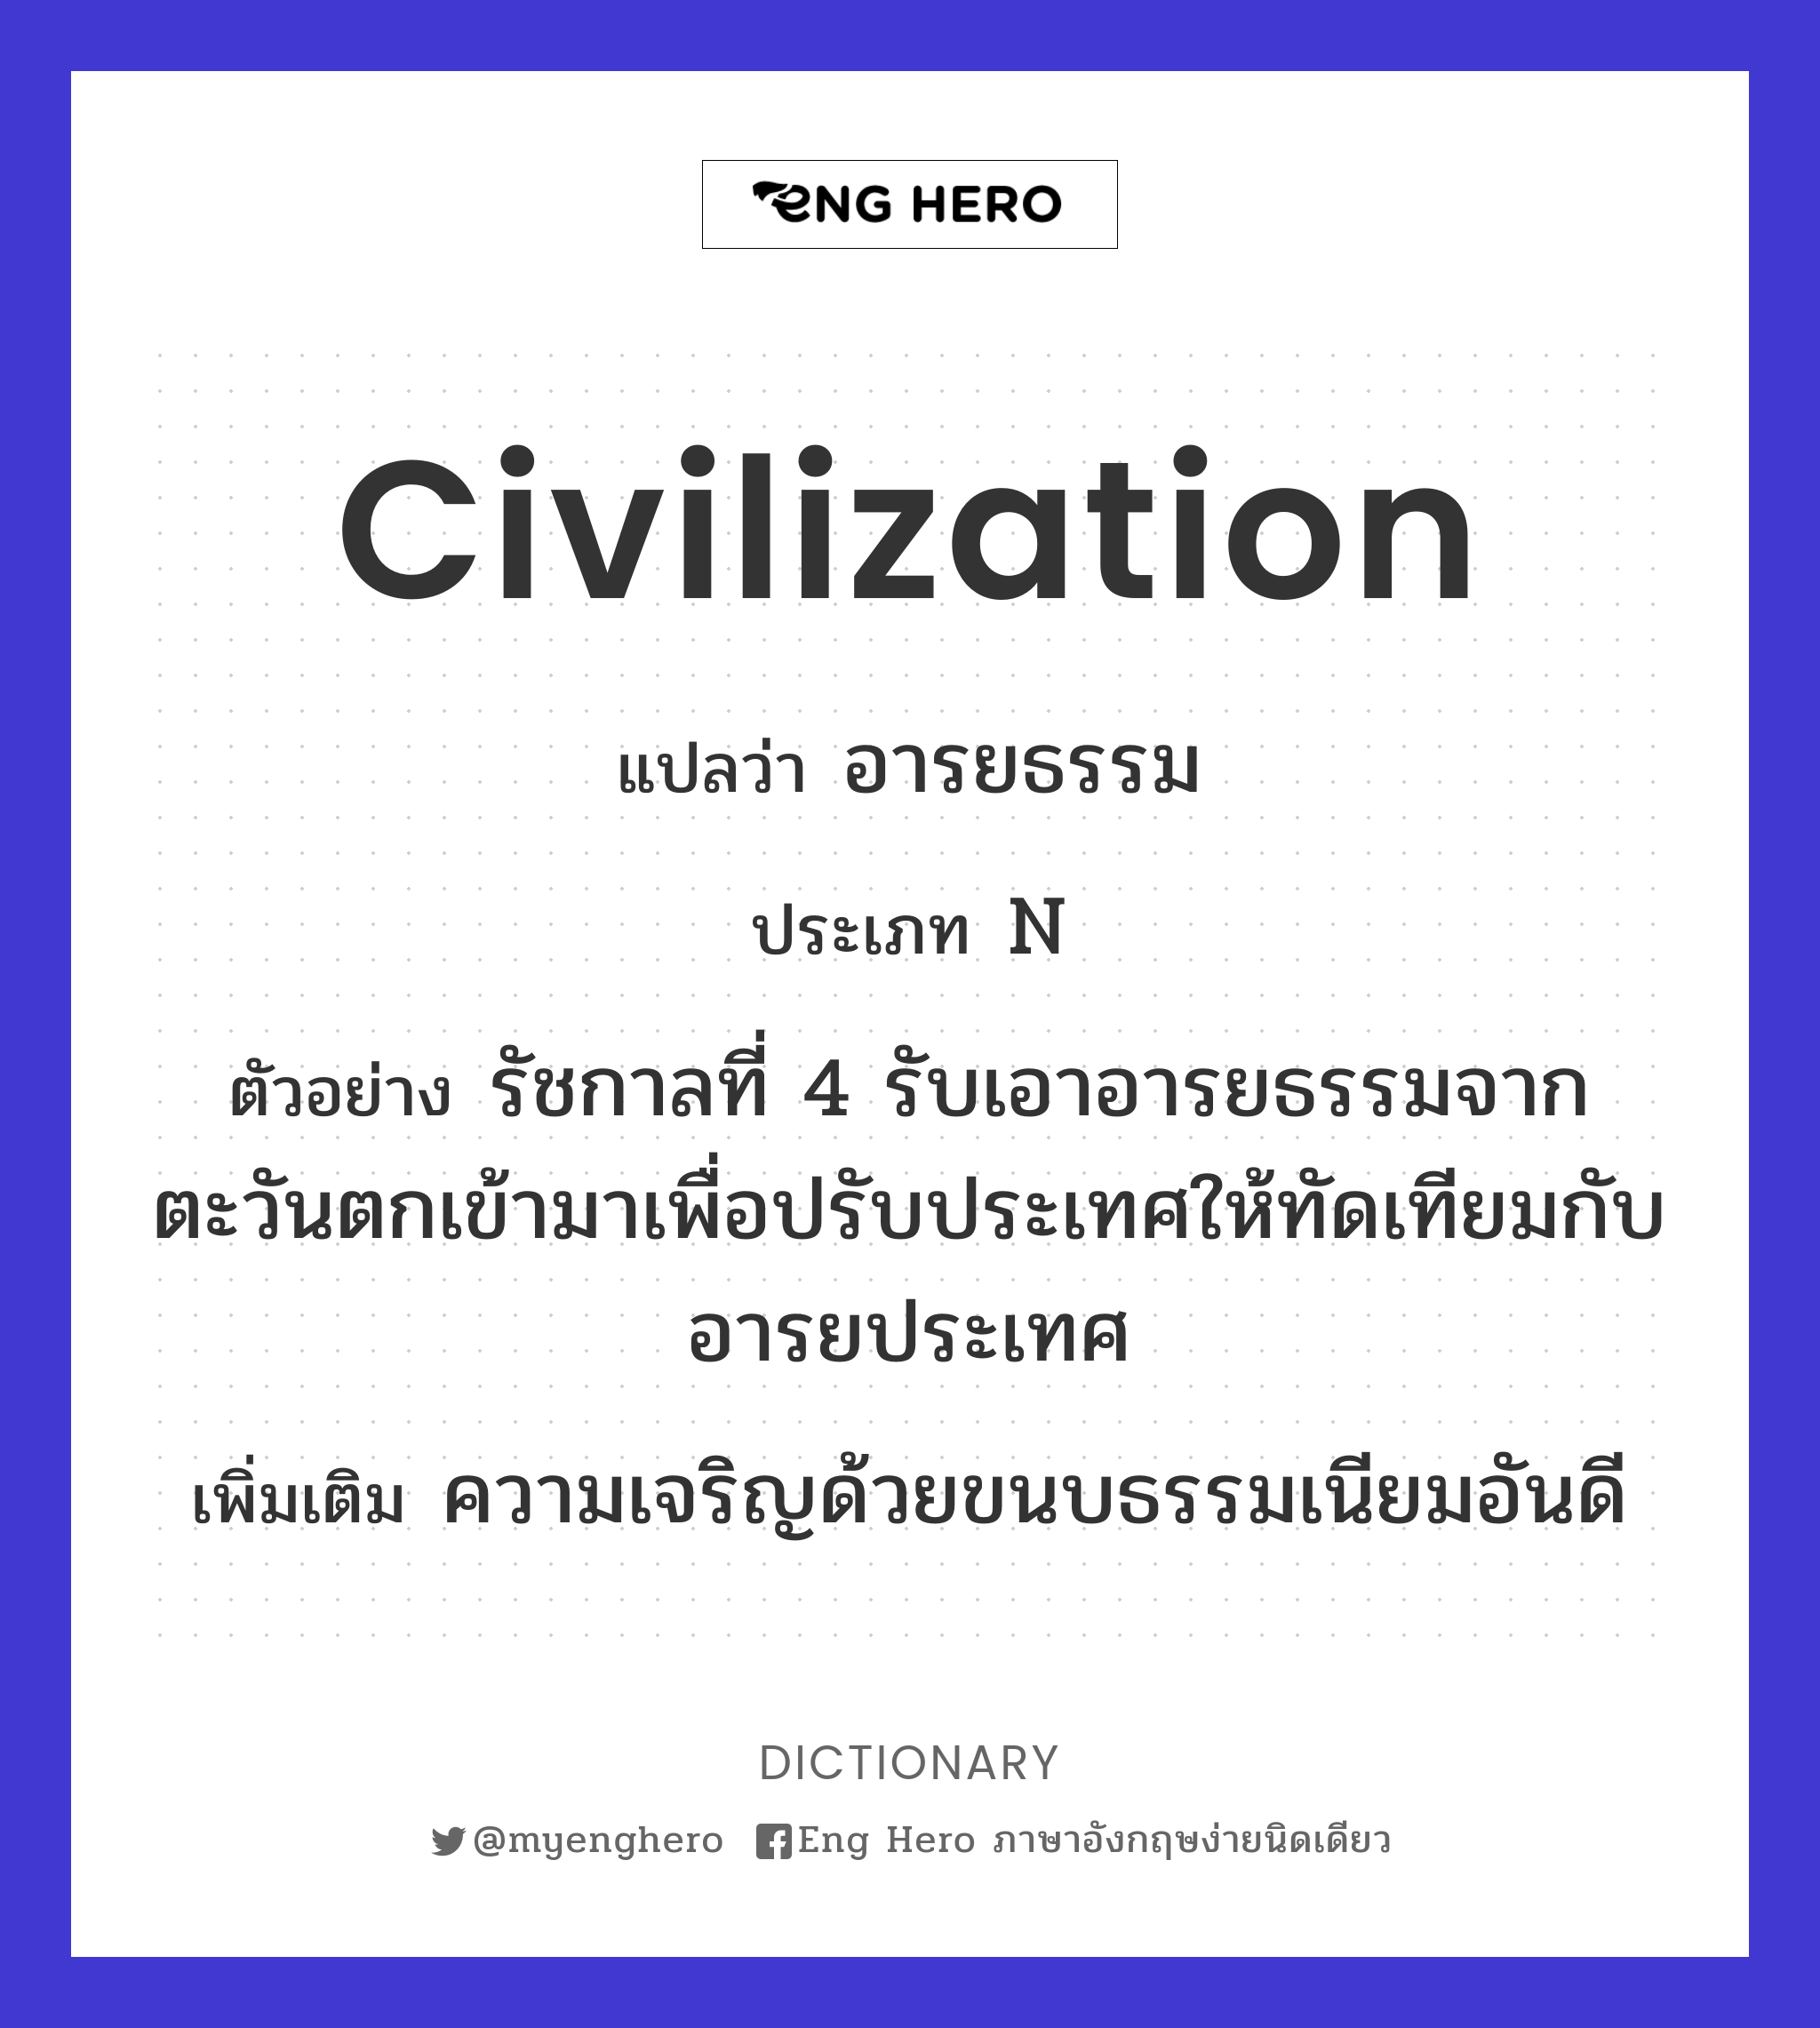 civilization